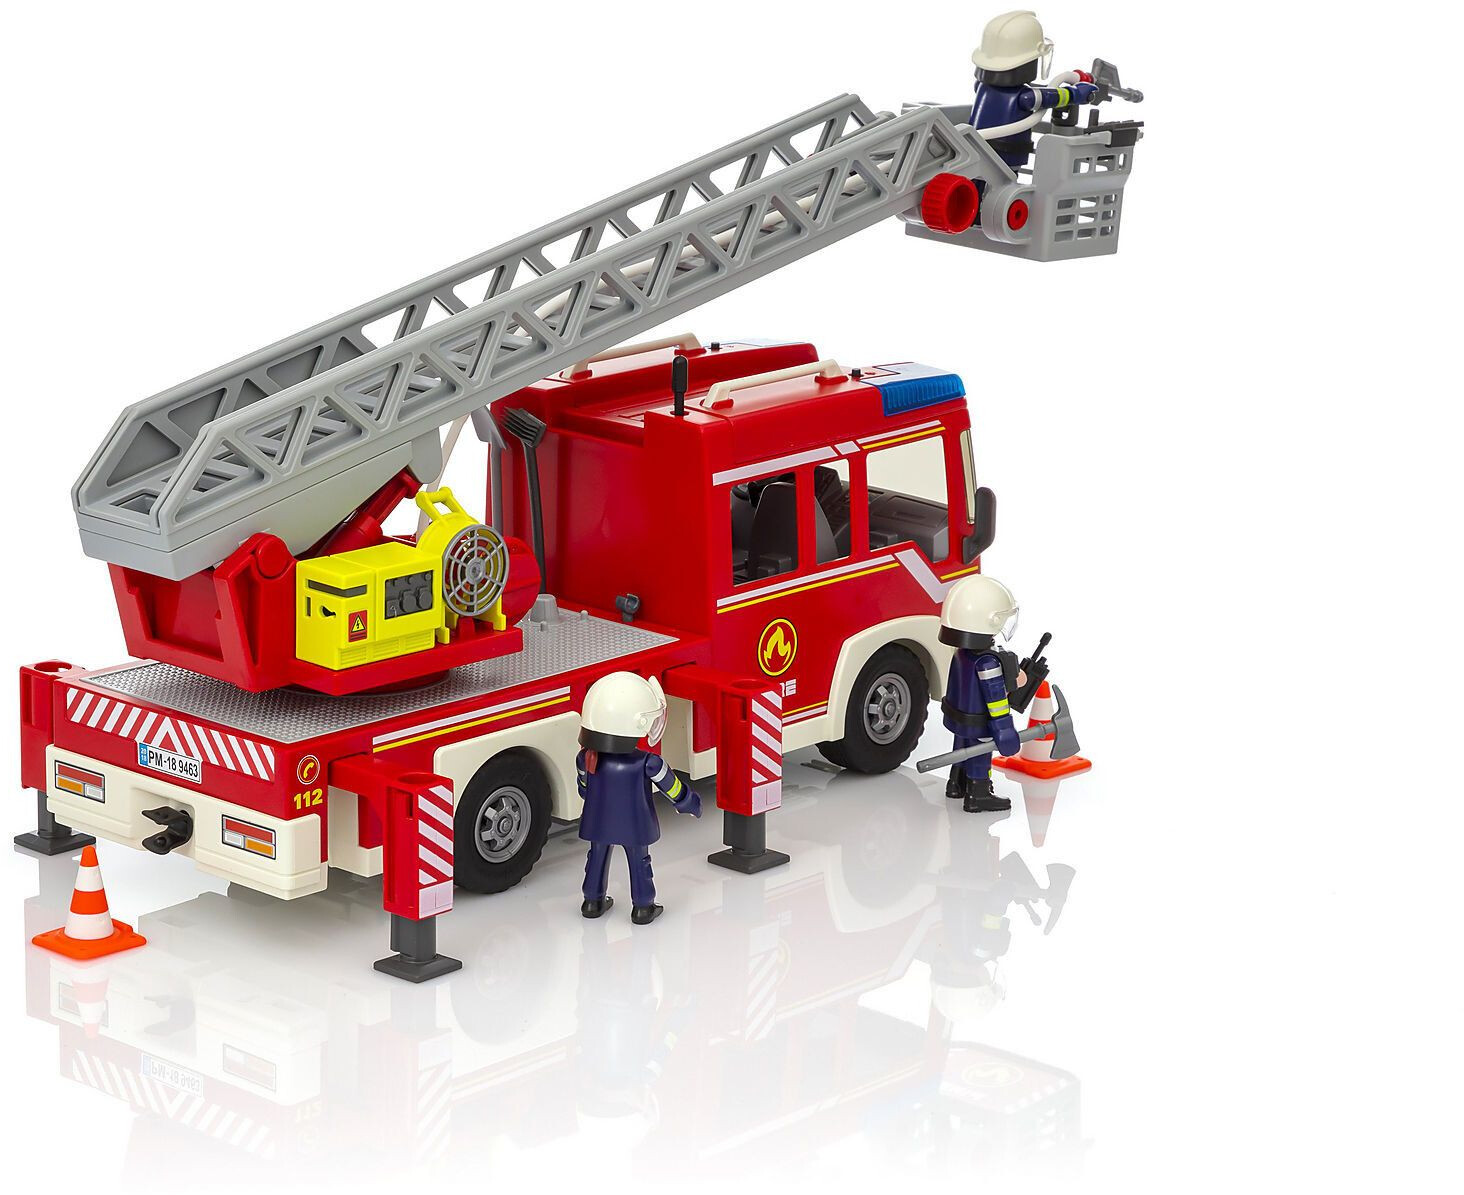 Camion de pompier avec échelle pivotante - 6967